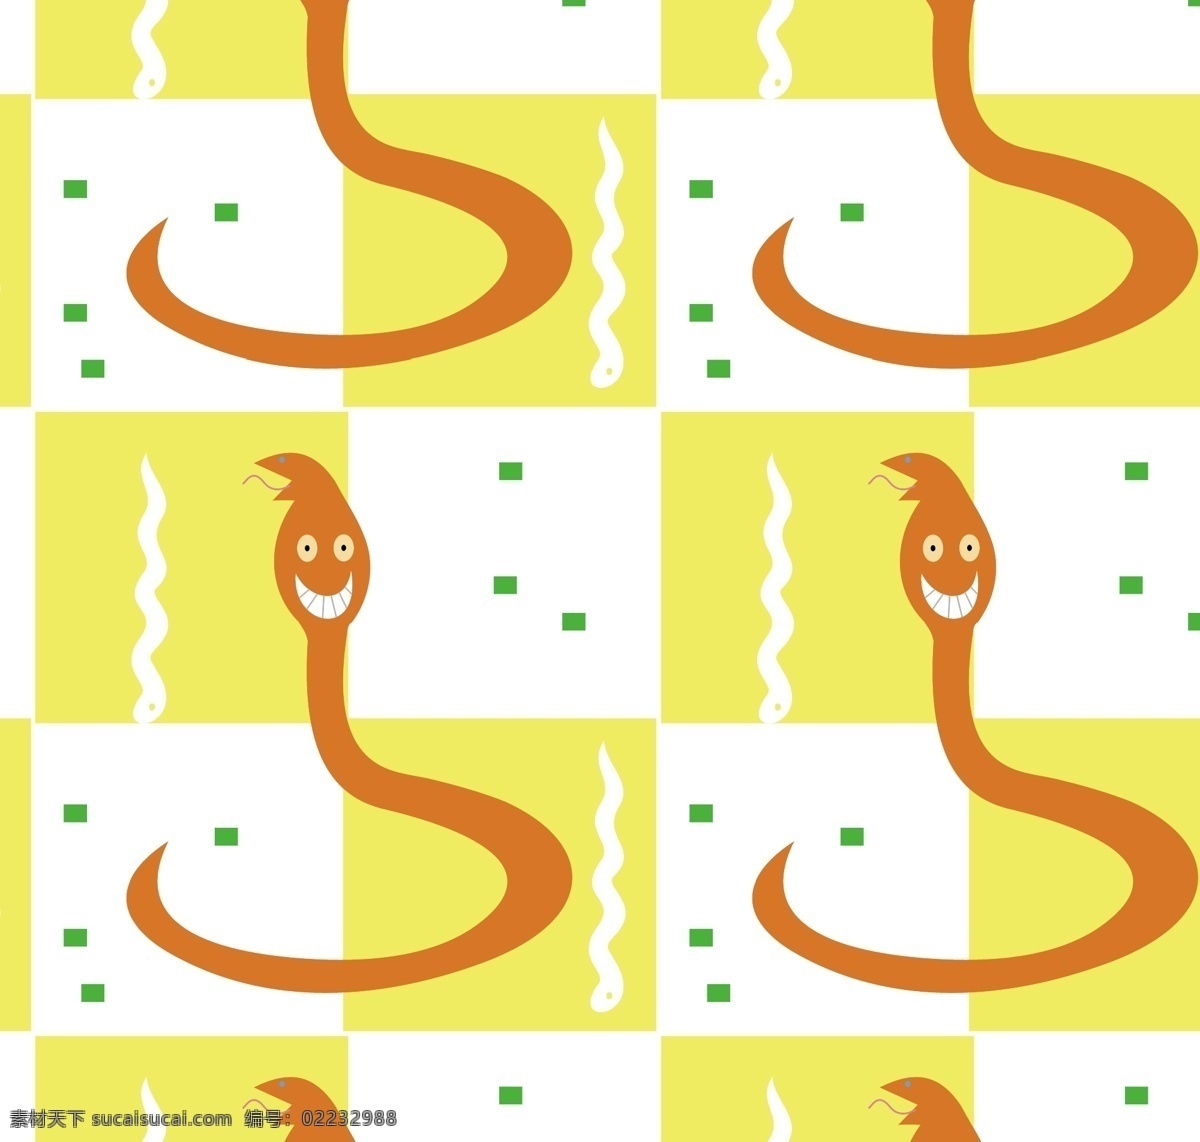 蛇 矢量图 动画 卡通 其他矢量图